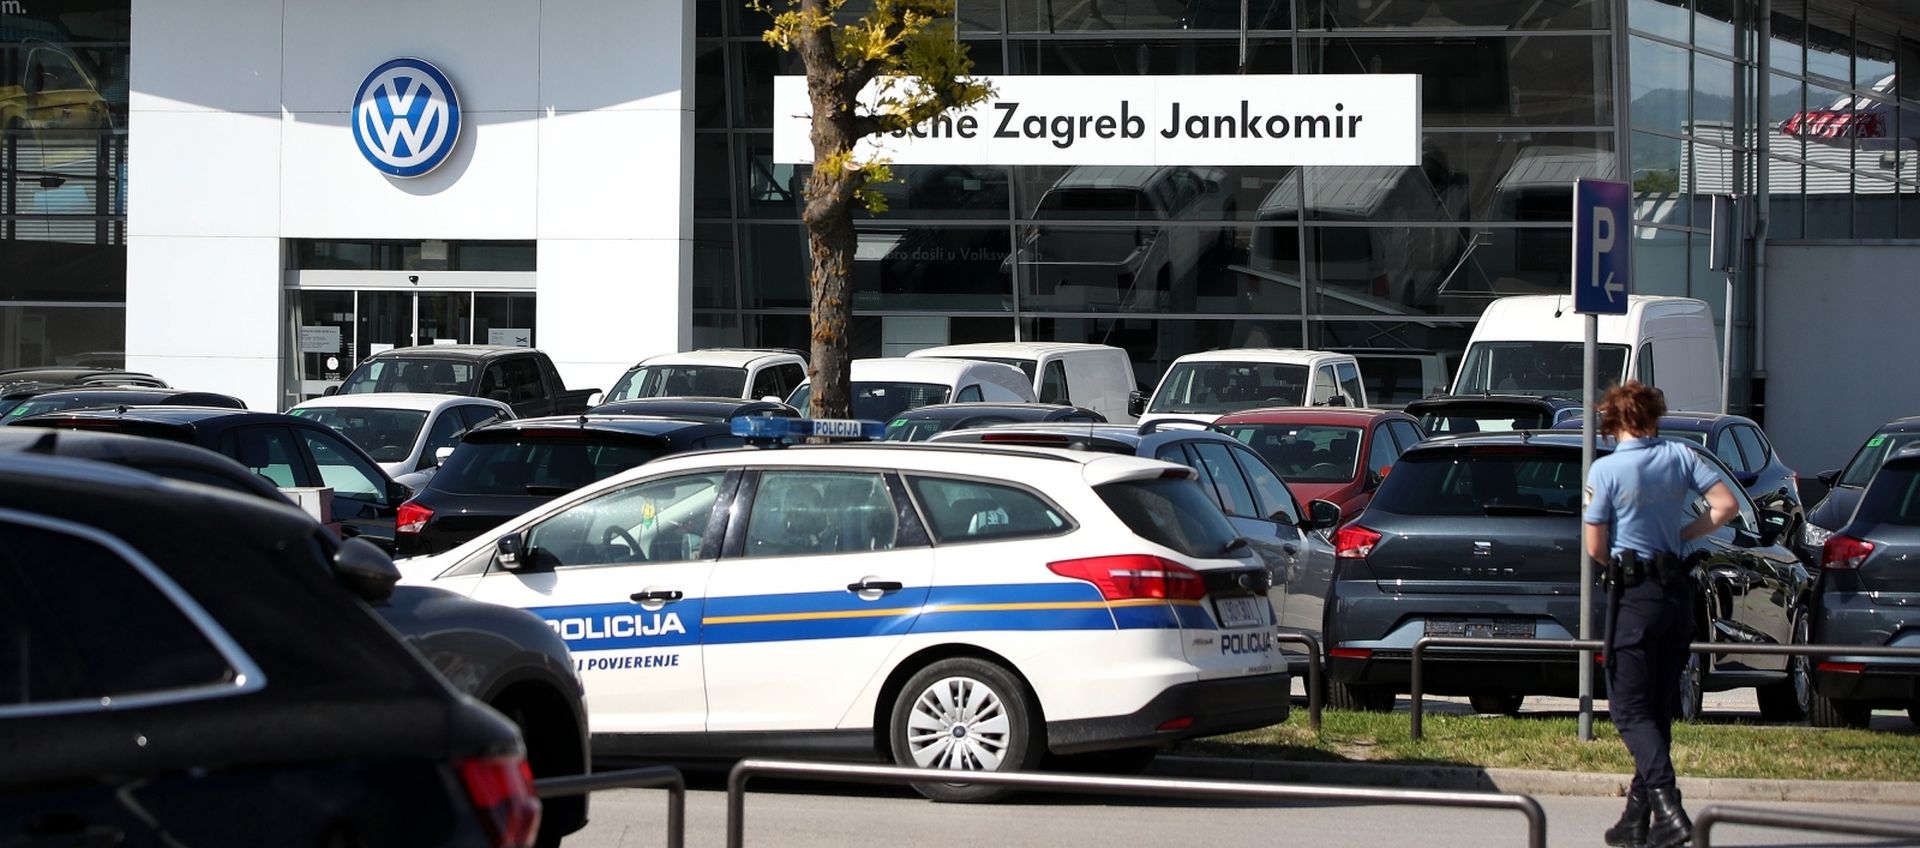 11.05.2020., Zagreb - Djelatnici servisa Porsche Inter Auto pronasli su improviziranu eksplozivnu napravu kod kotaca na jednom automobilu. Policija i pirotehnicari deaktivirali su bobmu. Photo: Igor Kralj/PIXSELL